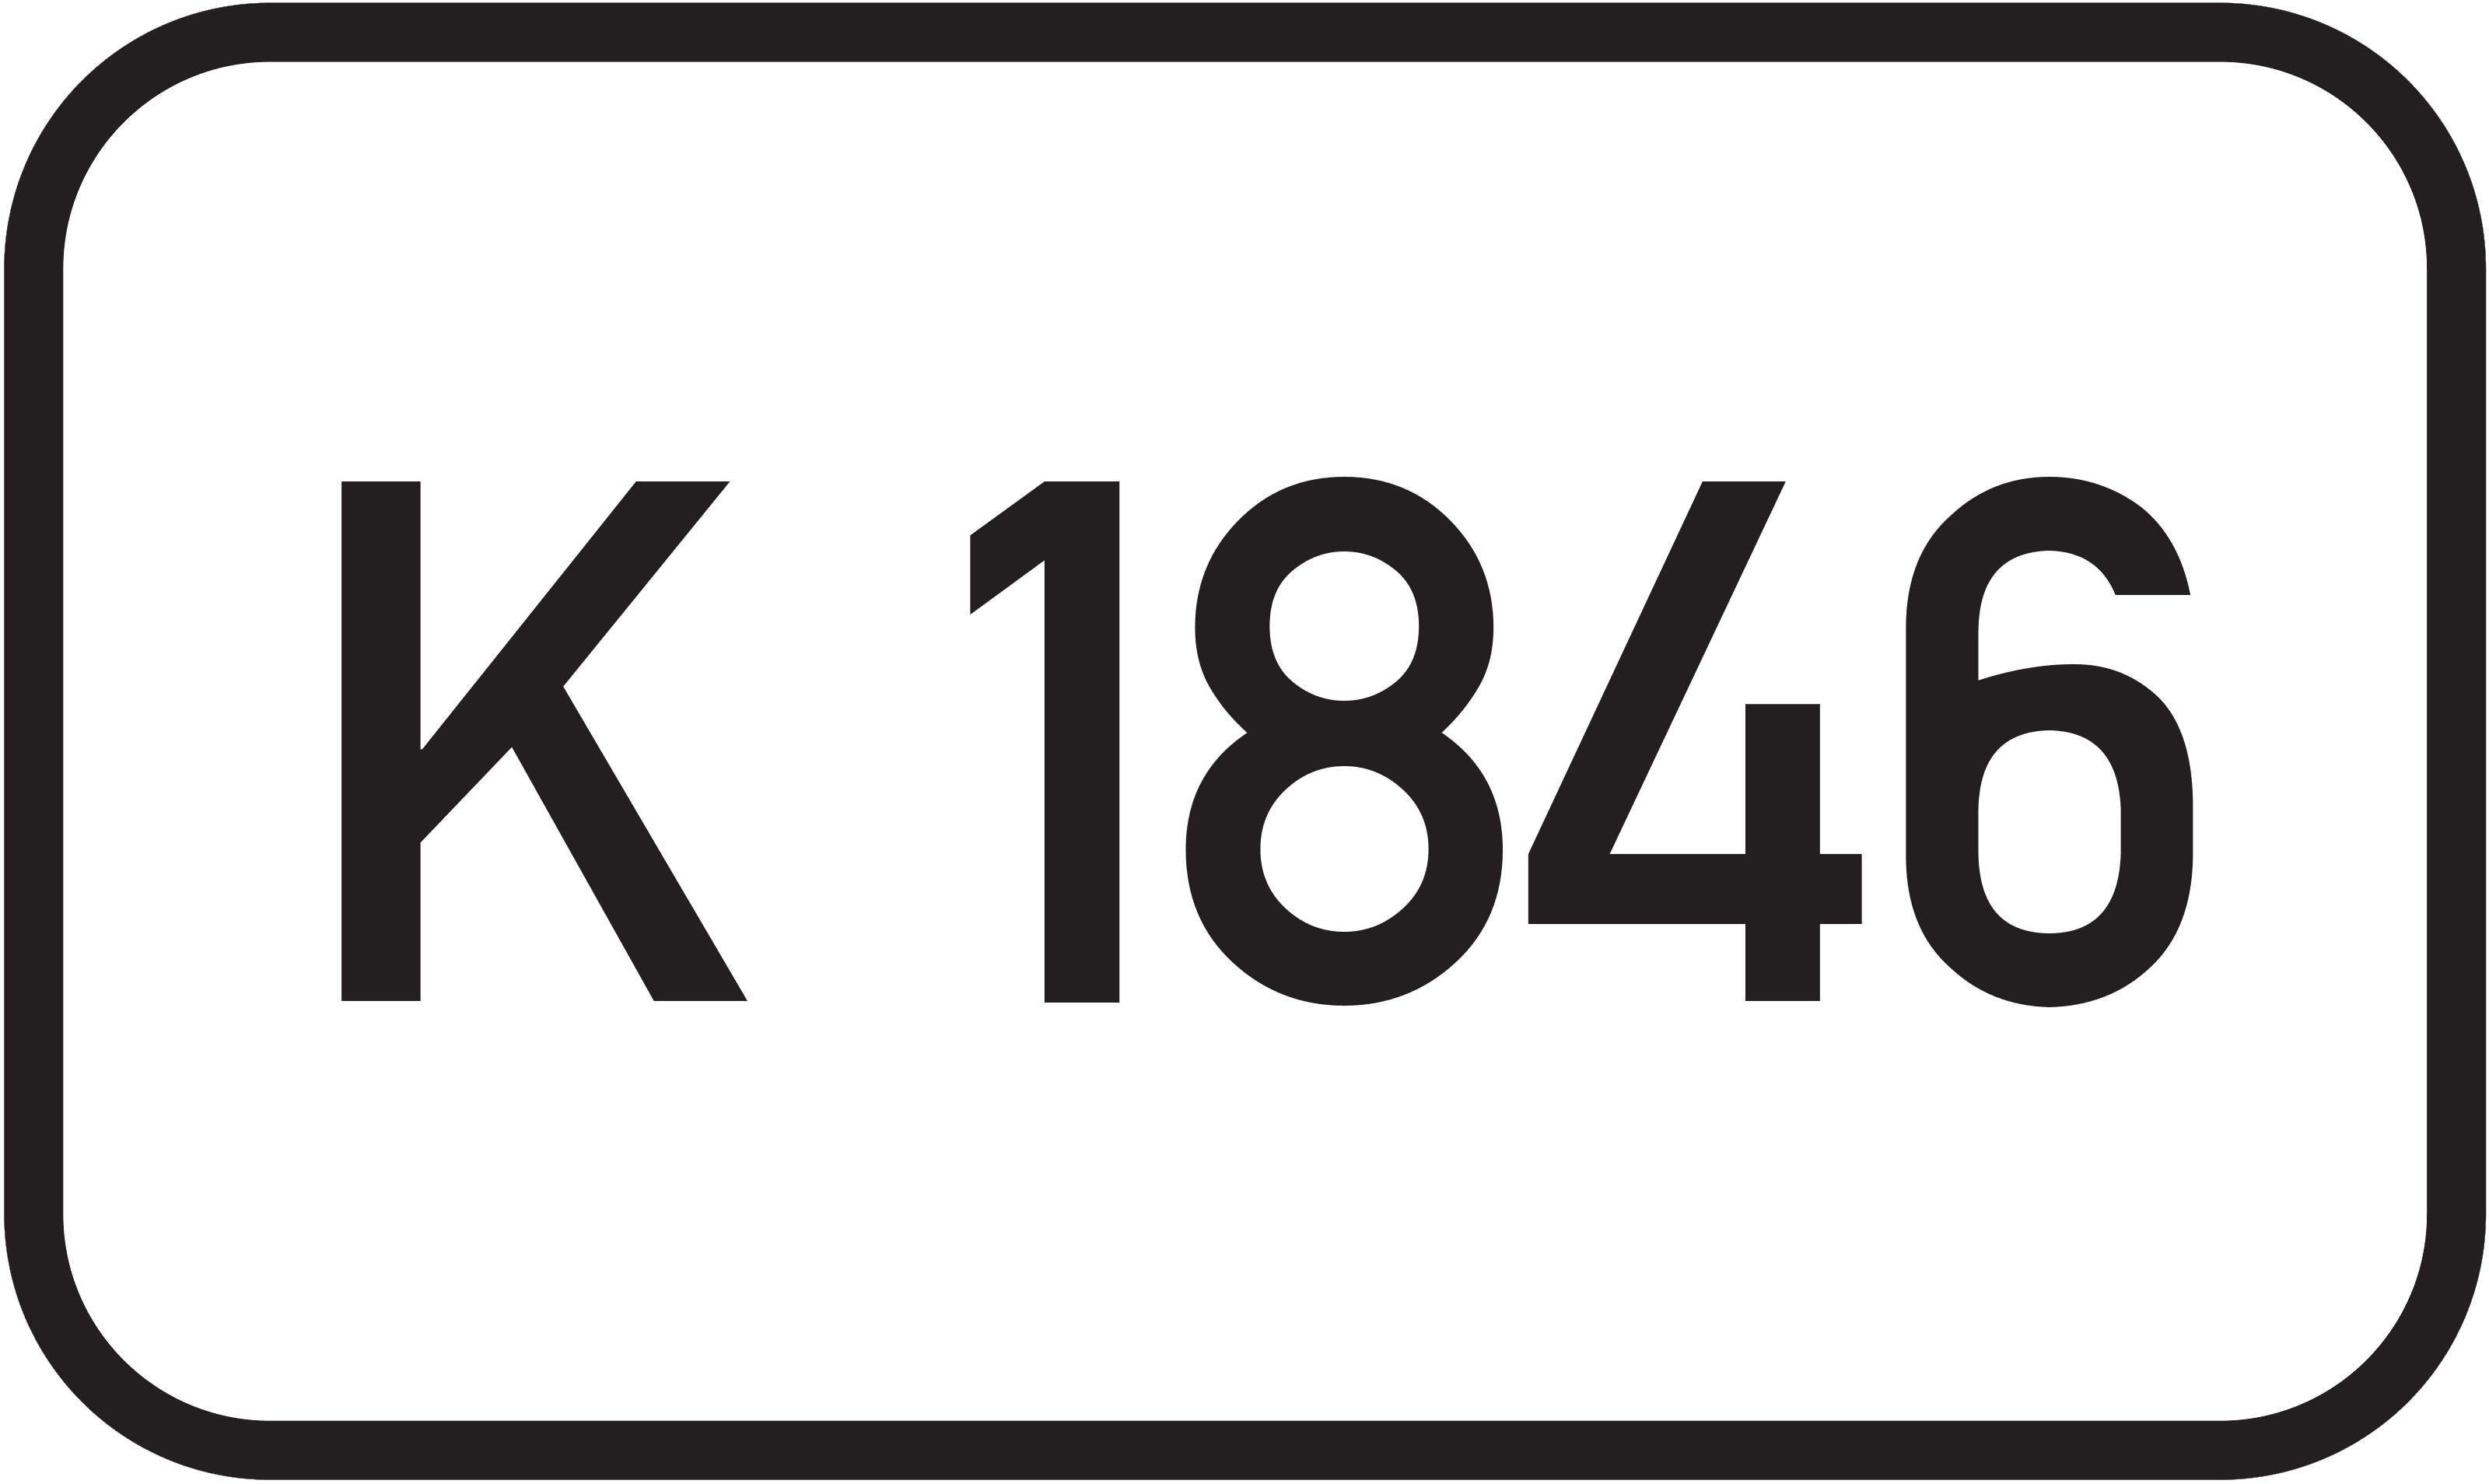 Bundesstraße K 1846